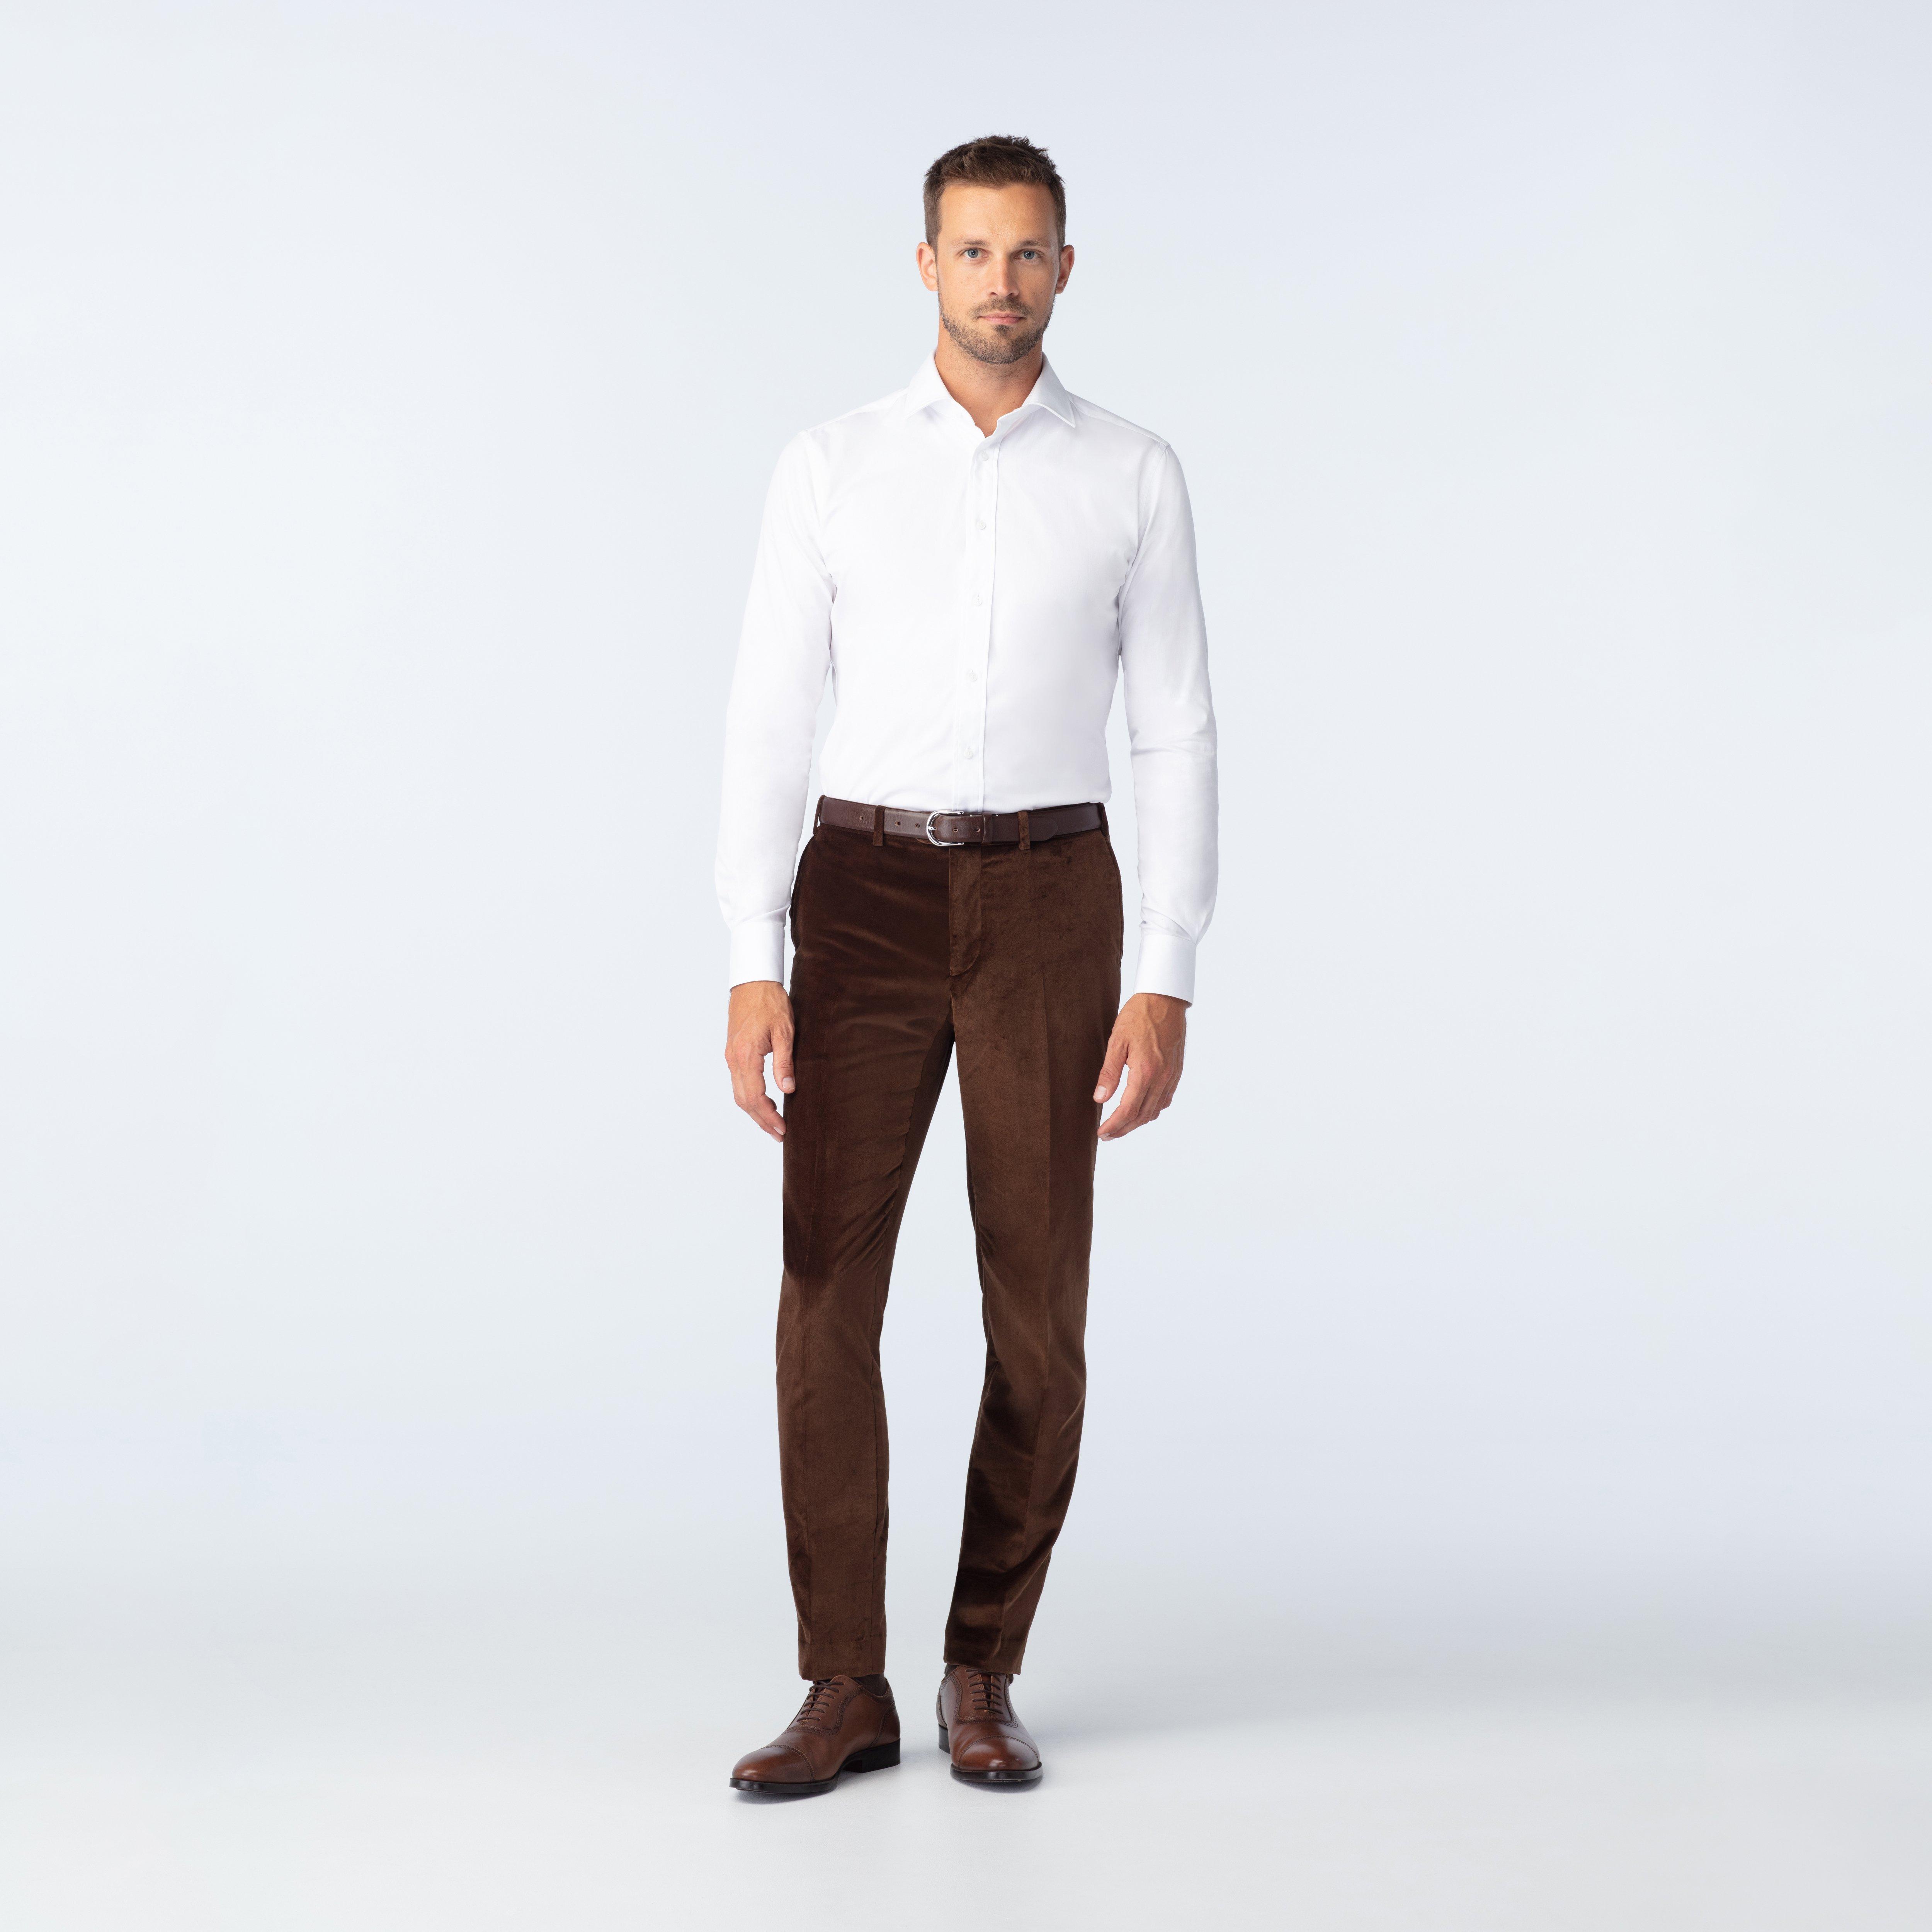 Men's Brown Formal Pant - Formal Trouser